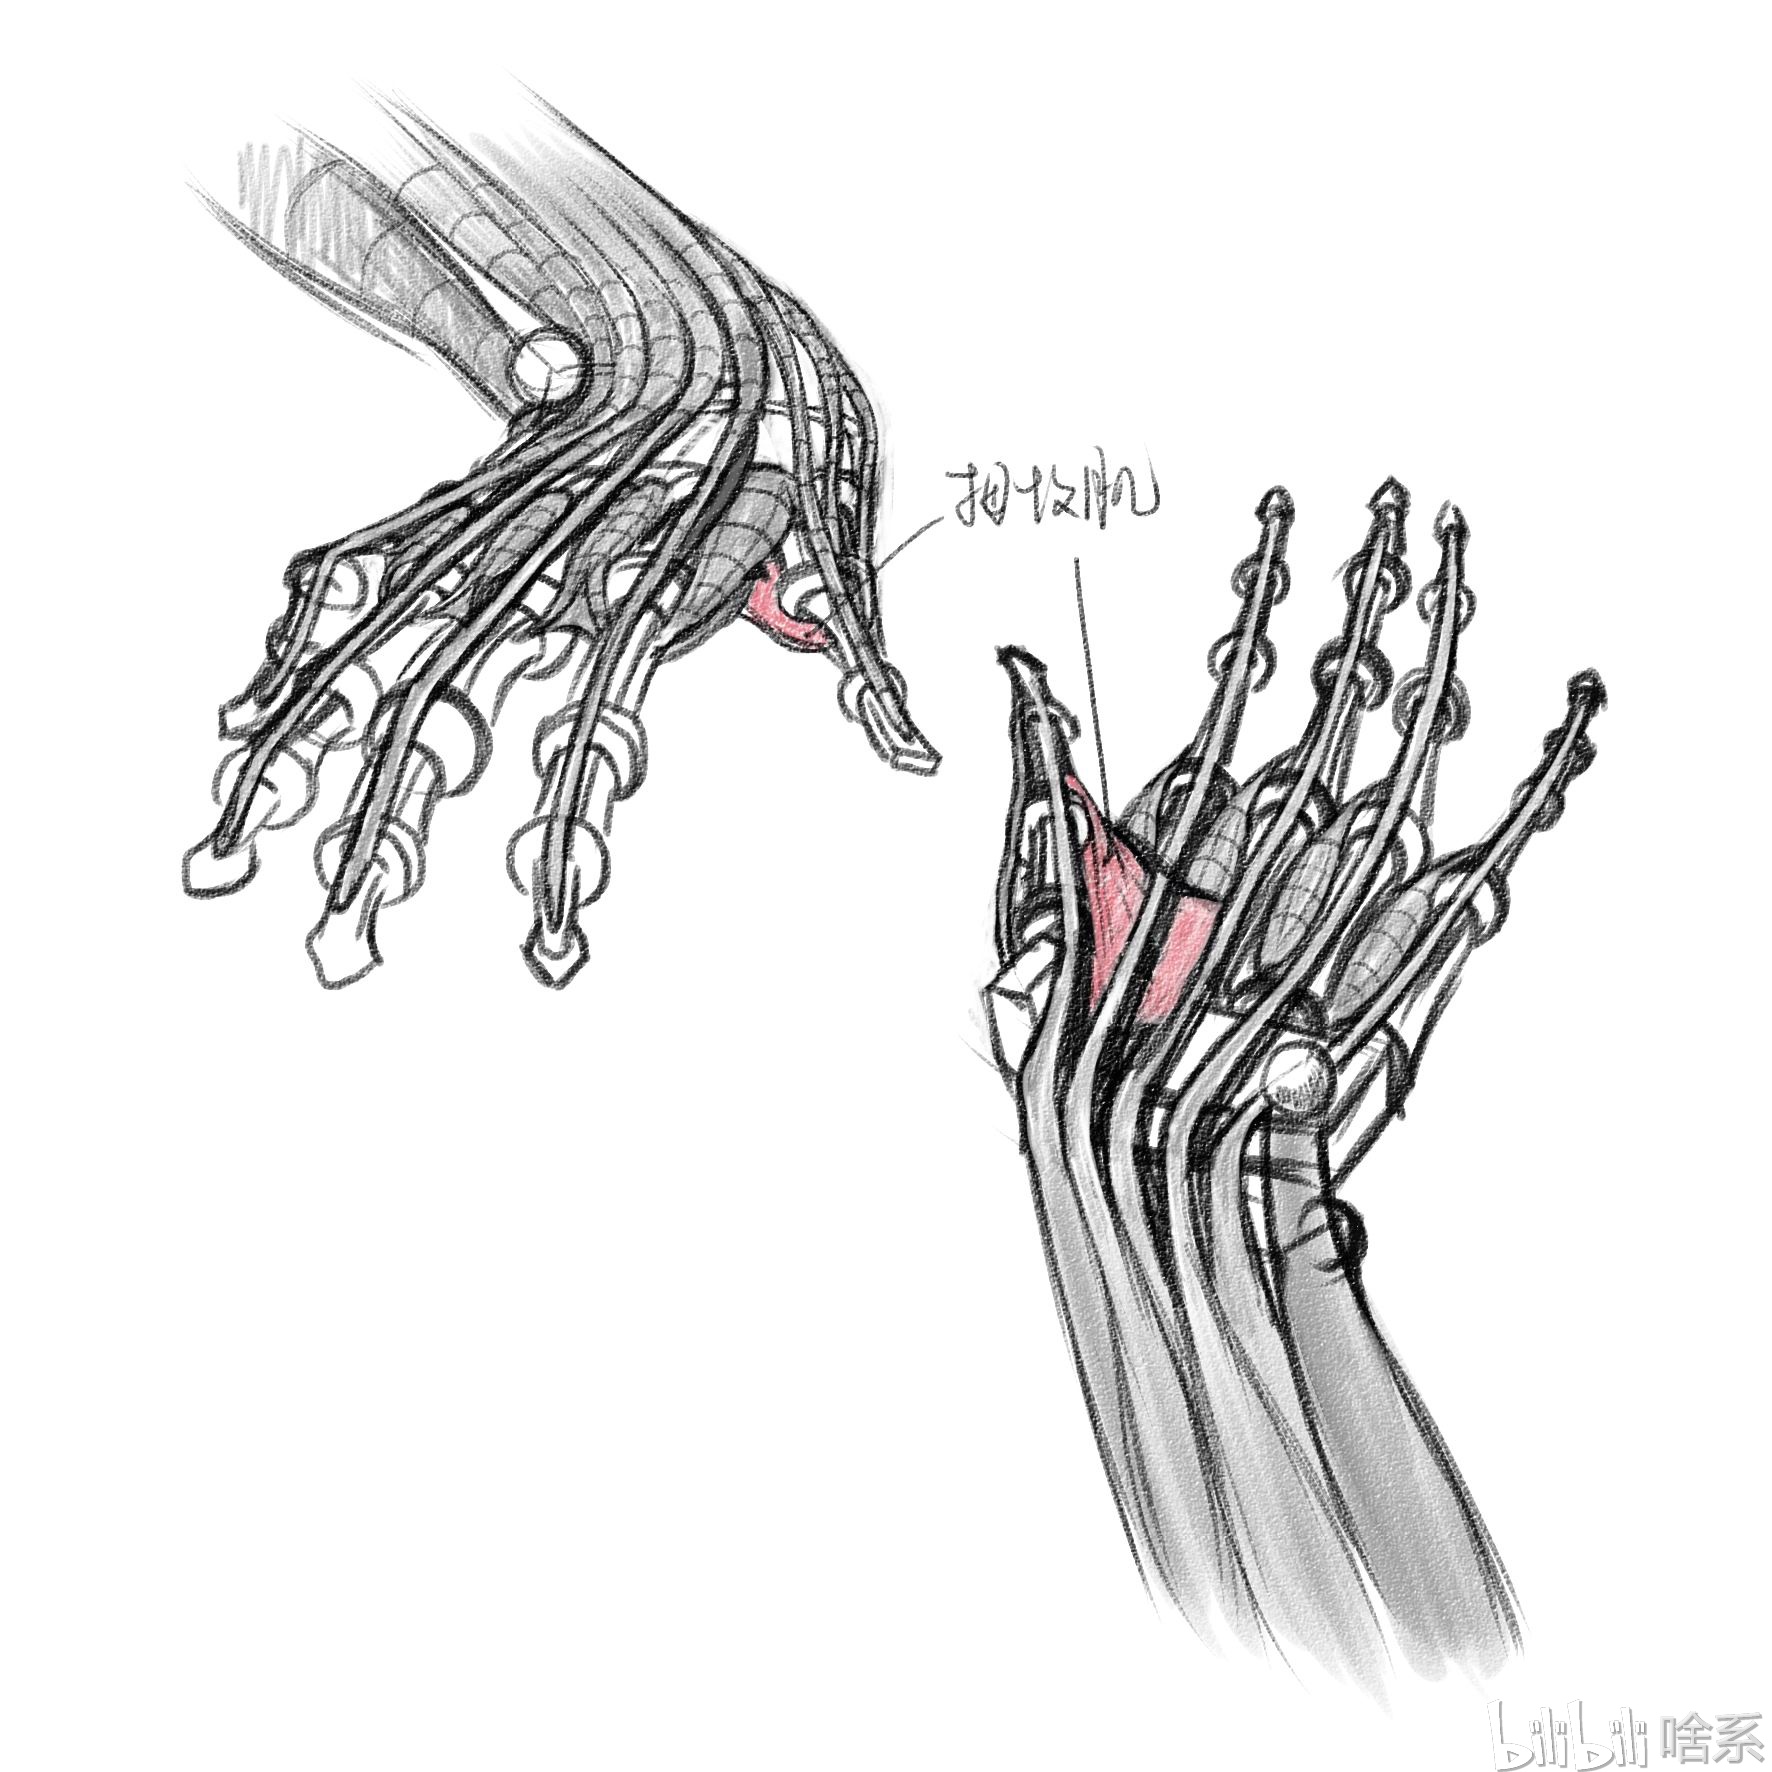 手部骨骼解剖图解,手腕八块骨头的部位图 - 伤感说说吧